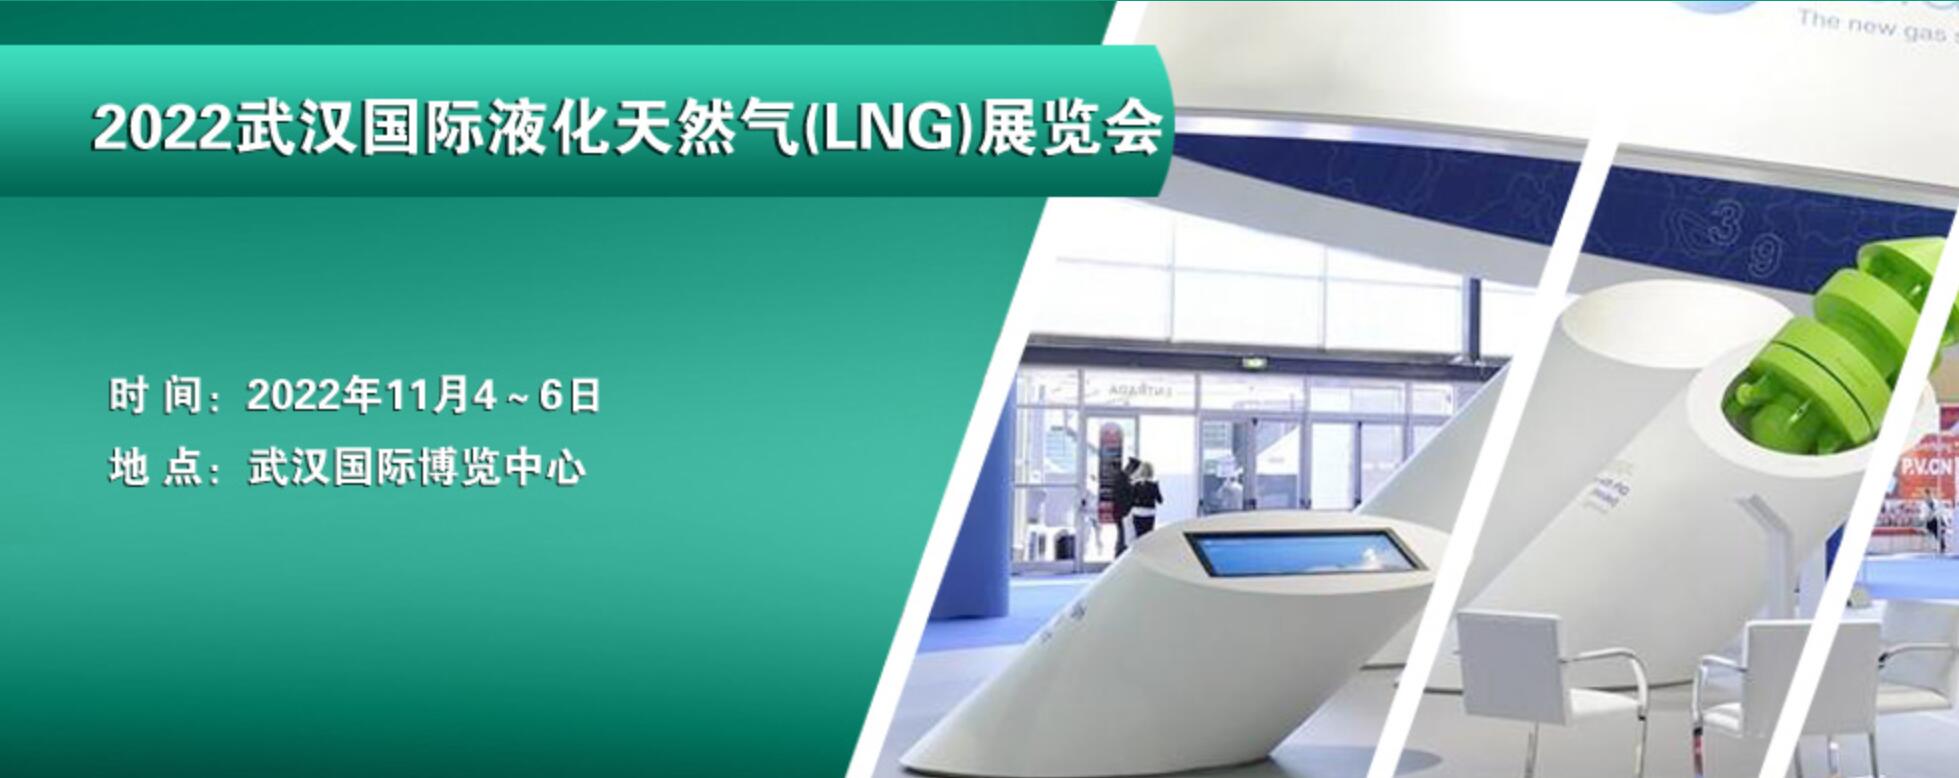 2022武漢國際液化天然氣(LNG)展覽會